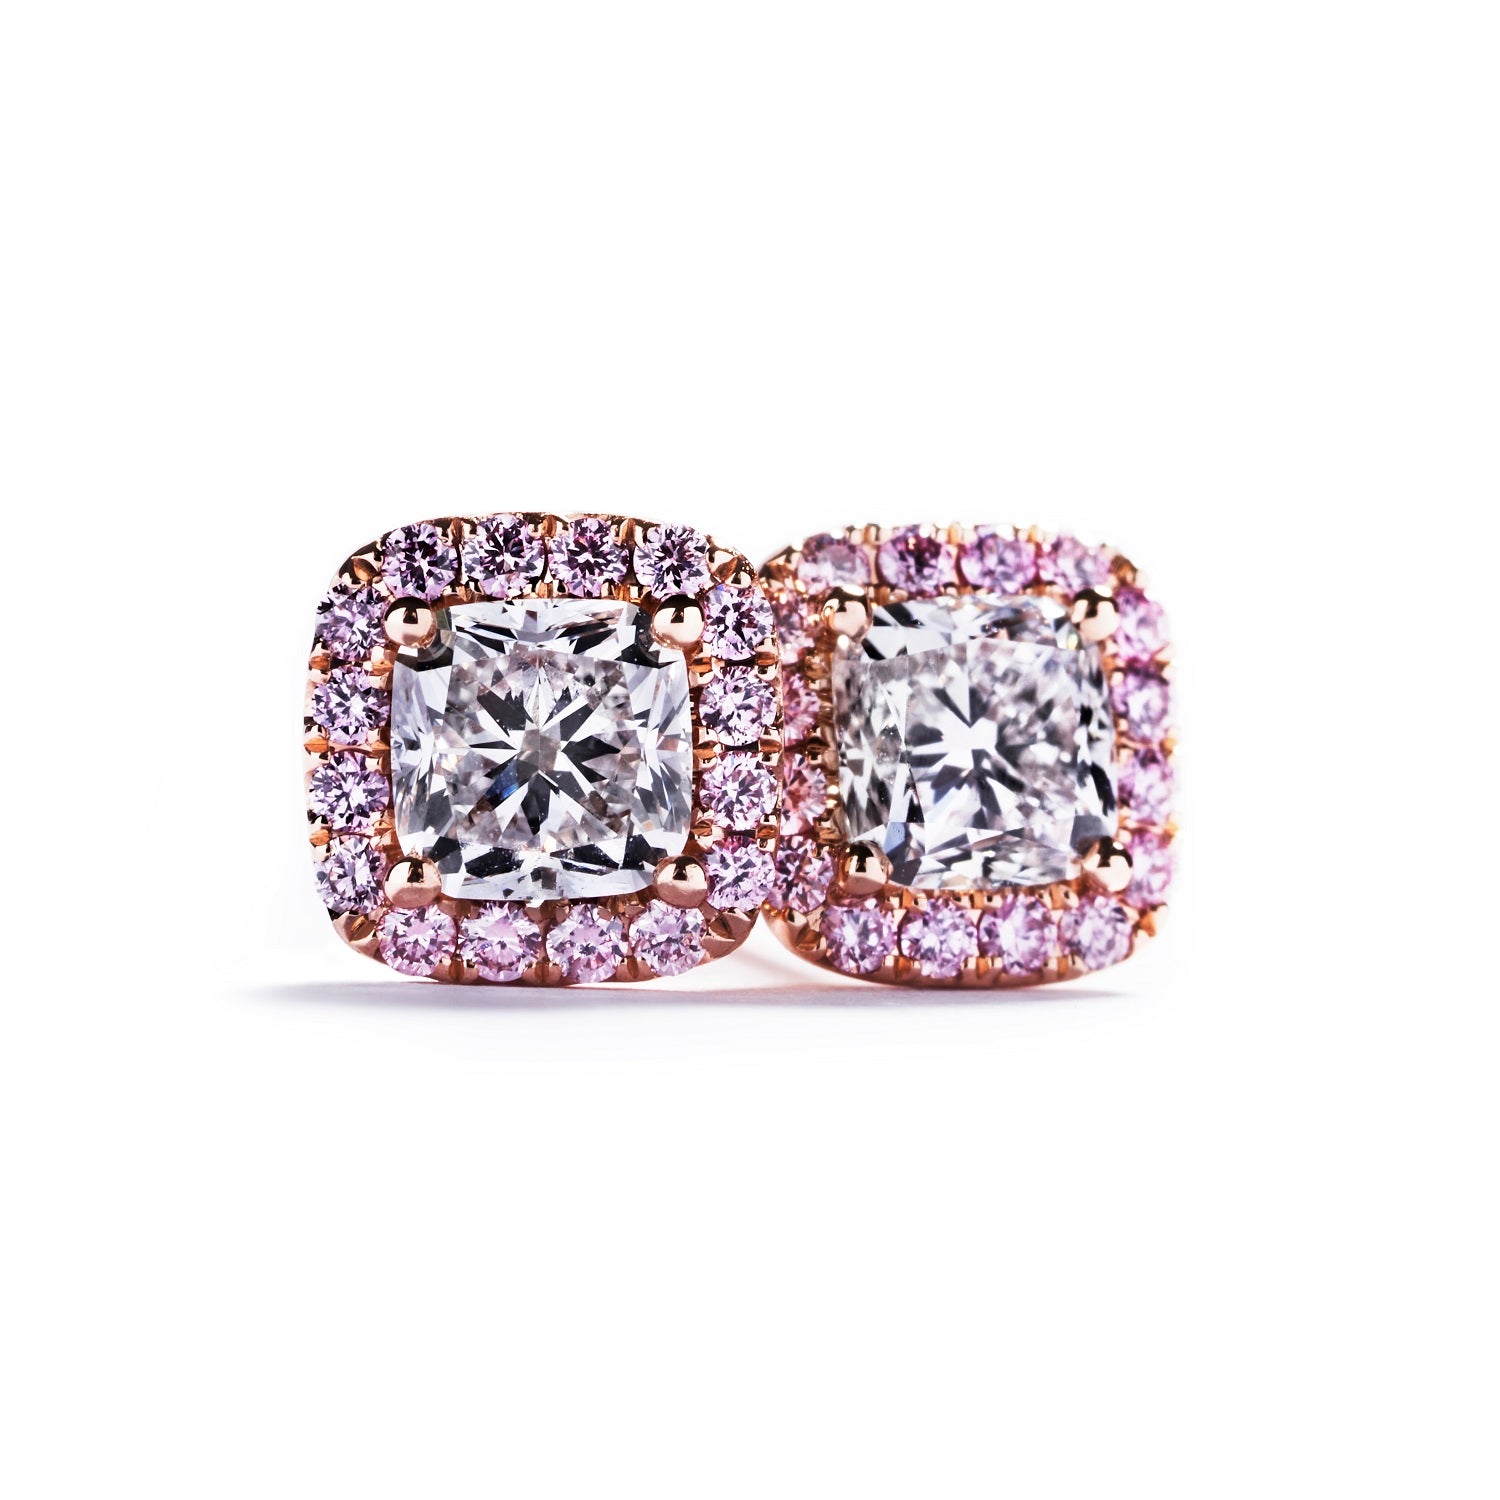 Rosetørestikker i 18 kt. rosaguld prydet med to cushion-cut Top Wesselton/VVS-VS diamanter,  i alt 0,60 ct. omkranset af 28 Natural Fancy Intense Pink/VS-SI  brillanter, i alt 0,19 ct.